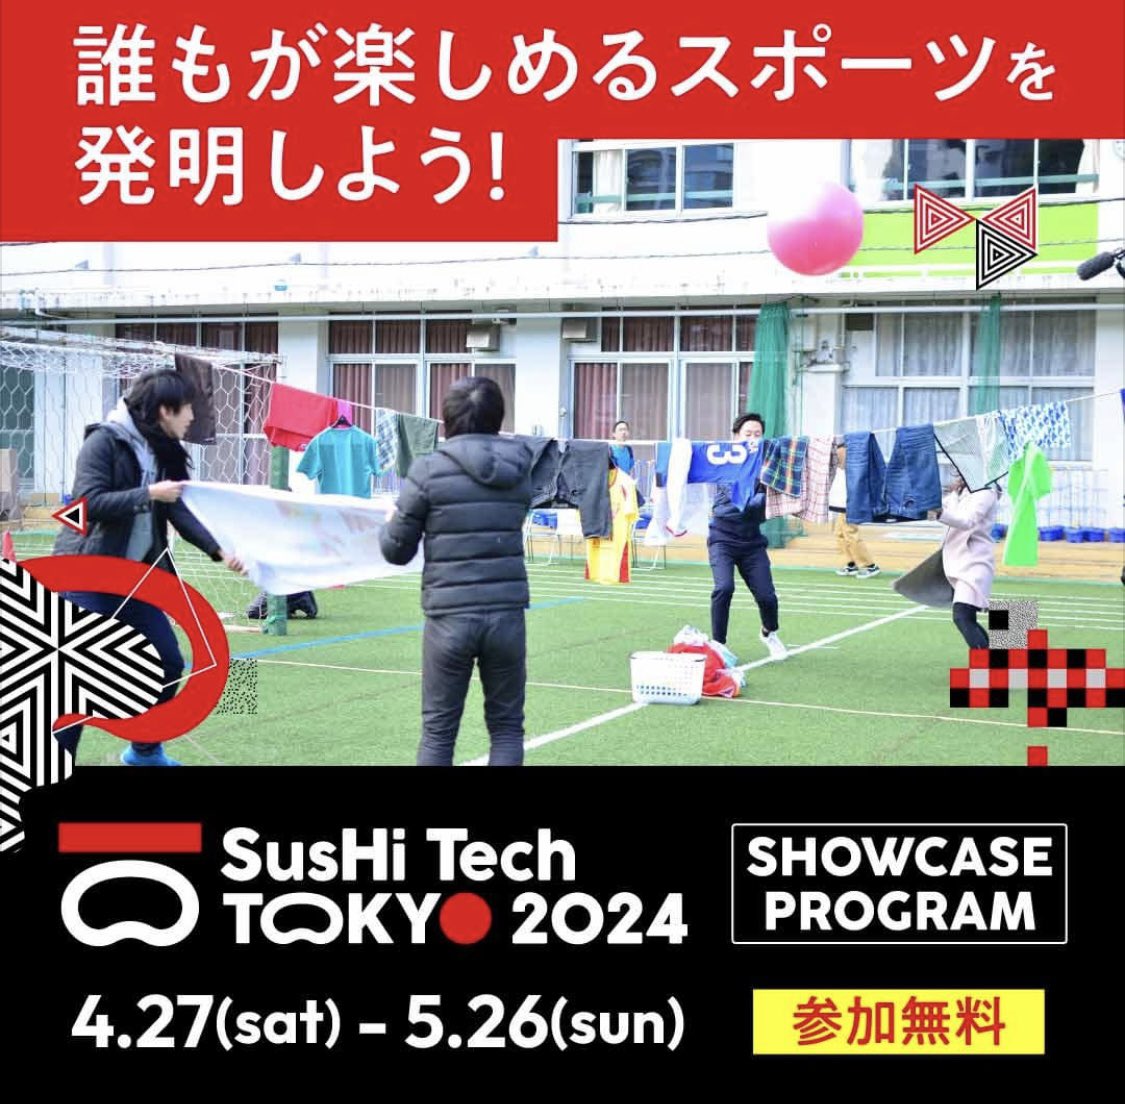 東京の未来をみんなで考える大型イベント　#SusHiTechTokyo にて、主に小学生を対象にした「誰もが楽しめるスポーツを発明しよう！」ワークショップが盛り上がっています🤸‍♂️5/5（日）まで開催しますので是非お申し込みください✨
…shitechtokyo2024-sc.metro.tokyo.lg.jp/module/booth/2…